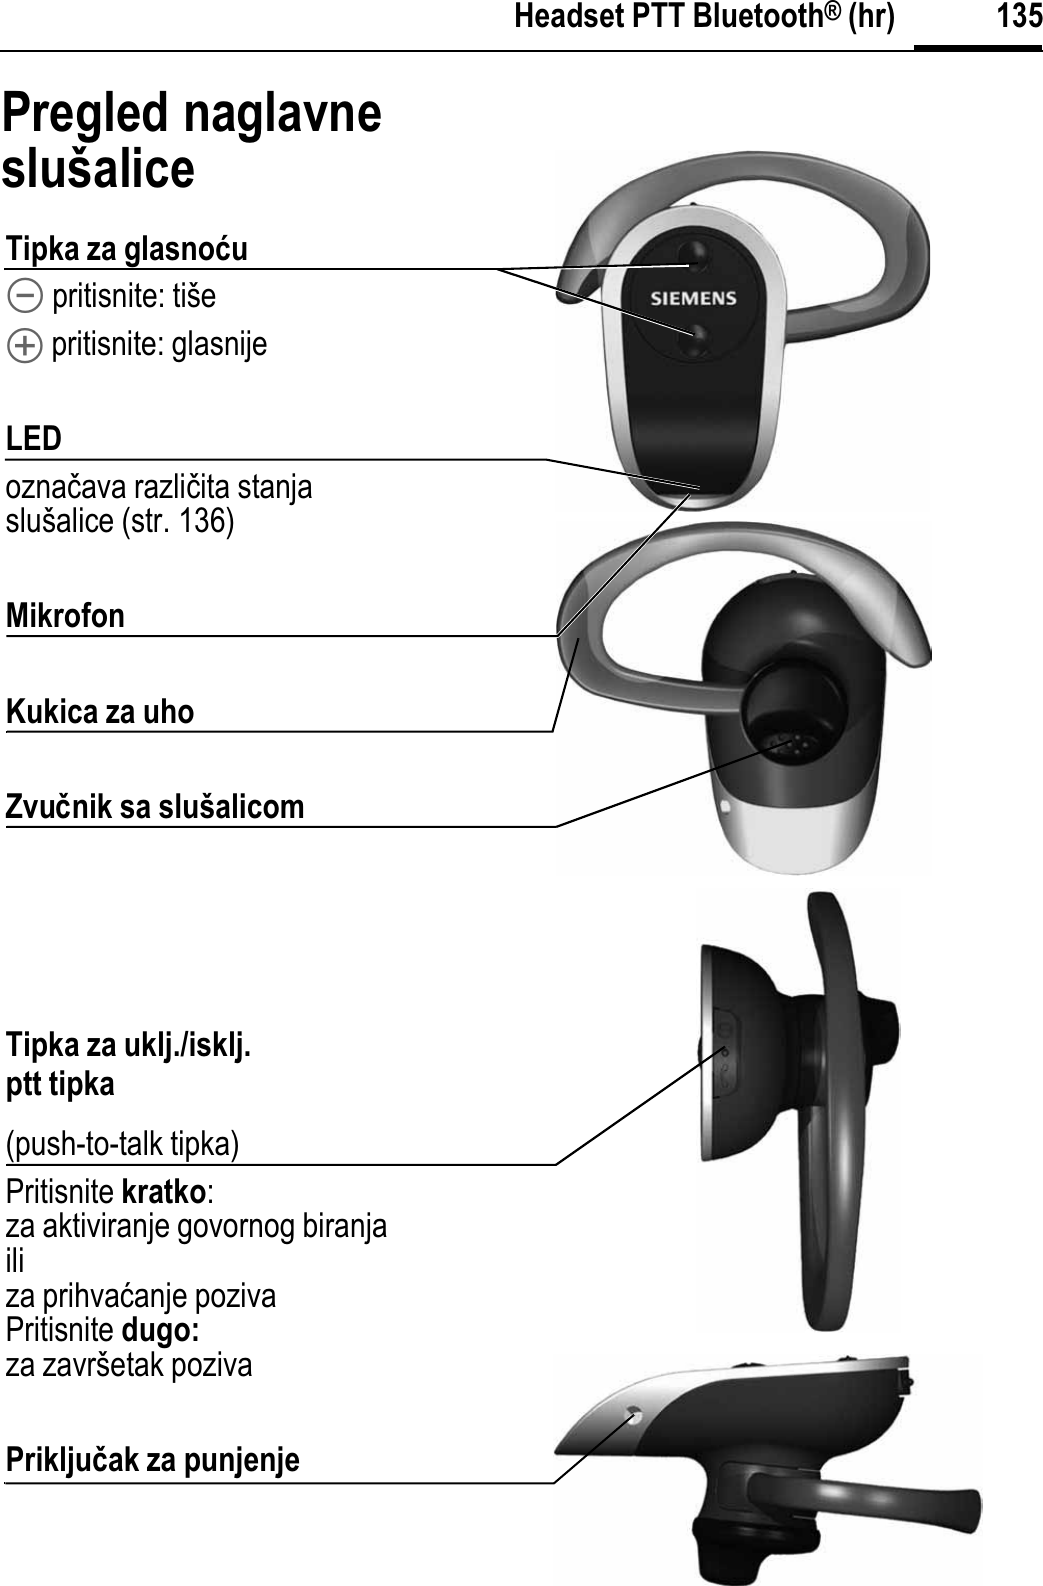 135Headset PTT Bluetooth® (hr)Pregled naglavne slušaliceTipka za glasnoýu\ pritisnite: tiše[ pritisnite: glasnijeLEDoznaþava razliþita stanja slušalice (str. 136)MikrofonKukica za uhoZvuÿnik sa slušalicomTipka za uklj./isklj.ptt tipka(push-to-talk tipka)Pritisnite kratko:za aktiviranje govornog biranjailiza prihvaüanje pozivaPritisnite dugo:za završetak pozivaPrikljuÿak za punjenje